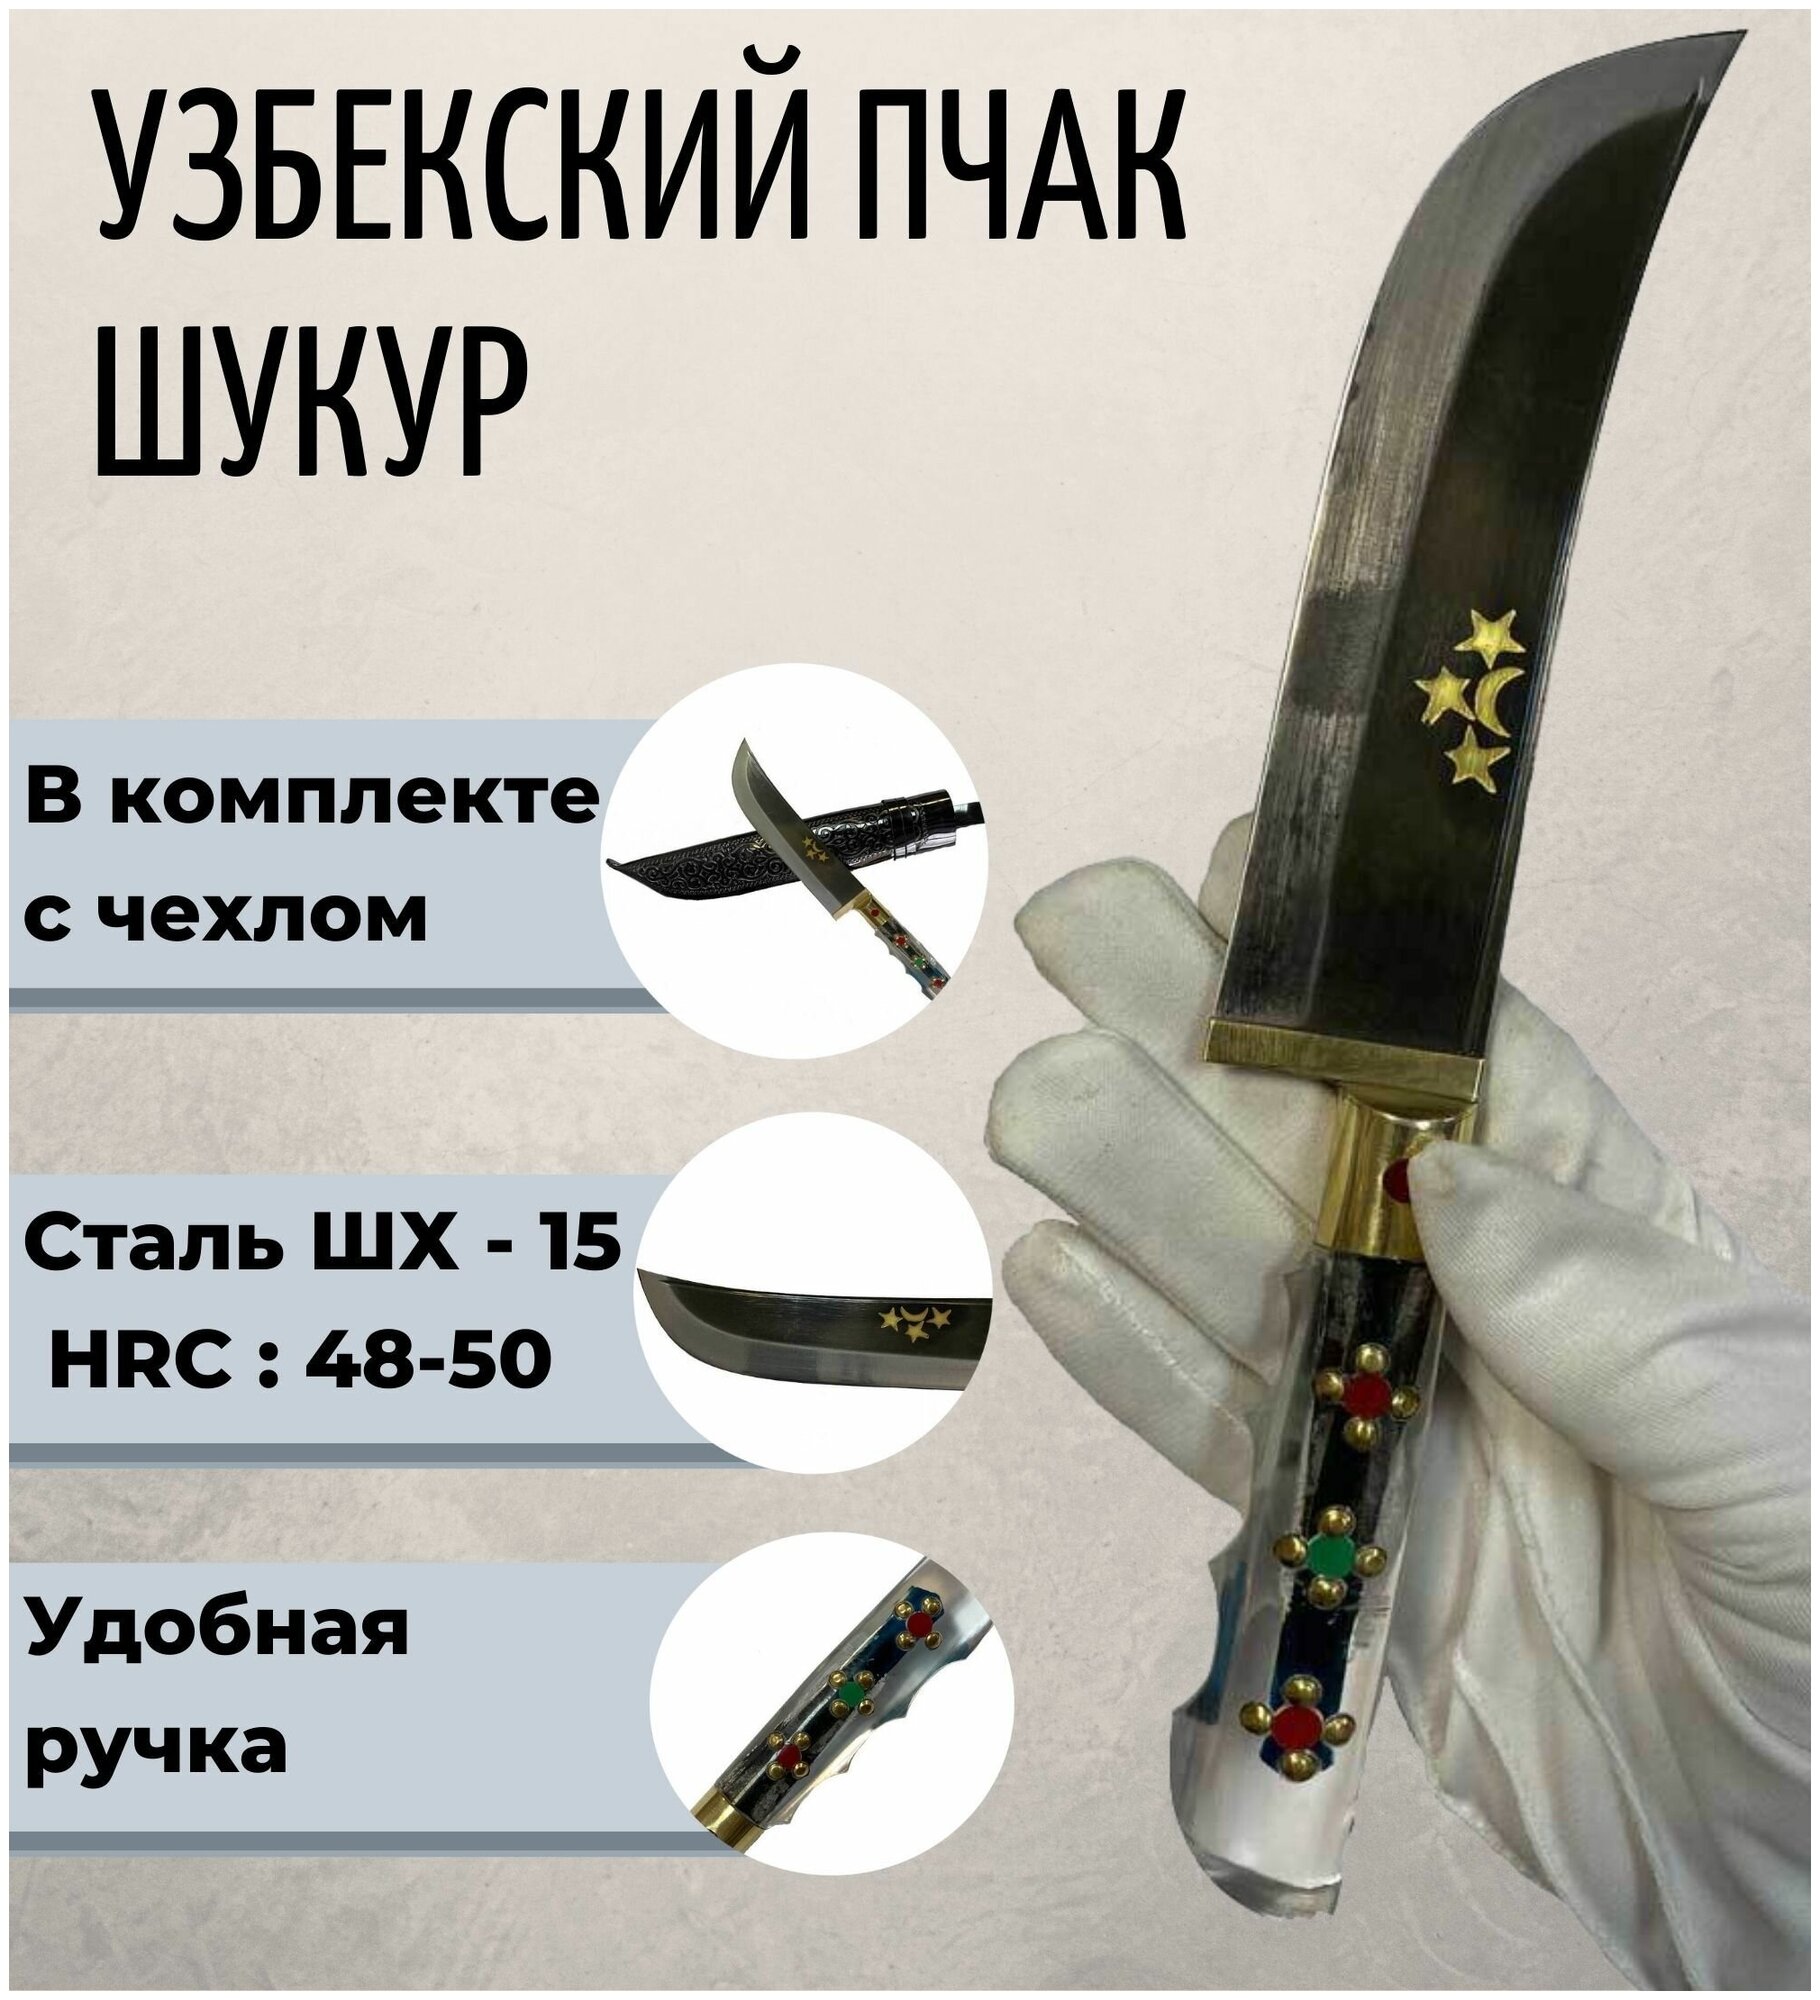 Узбекский нож Пчак Шукур 27 см. - фотография № 1